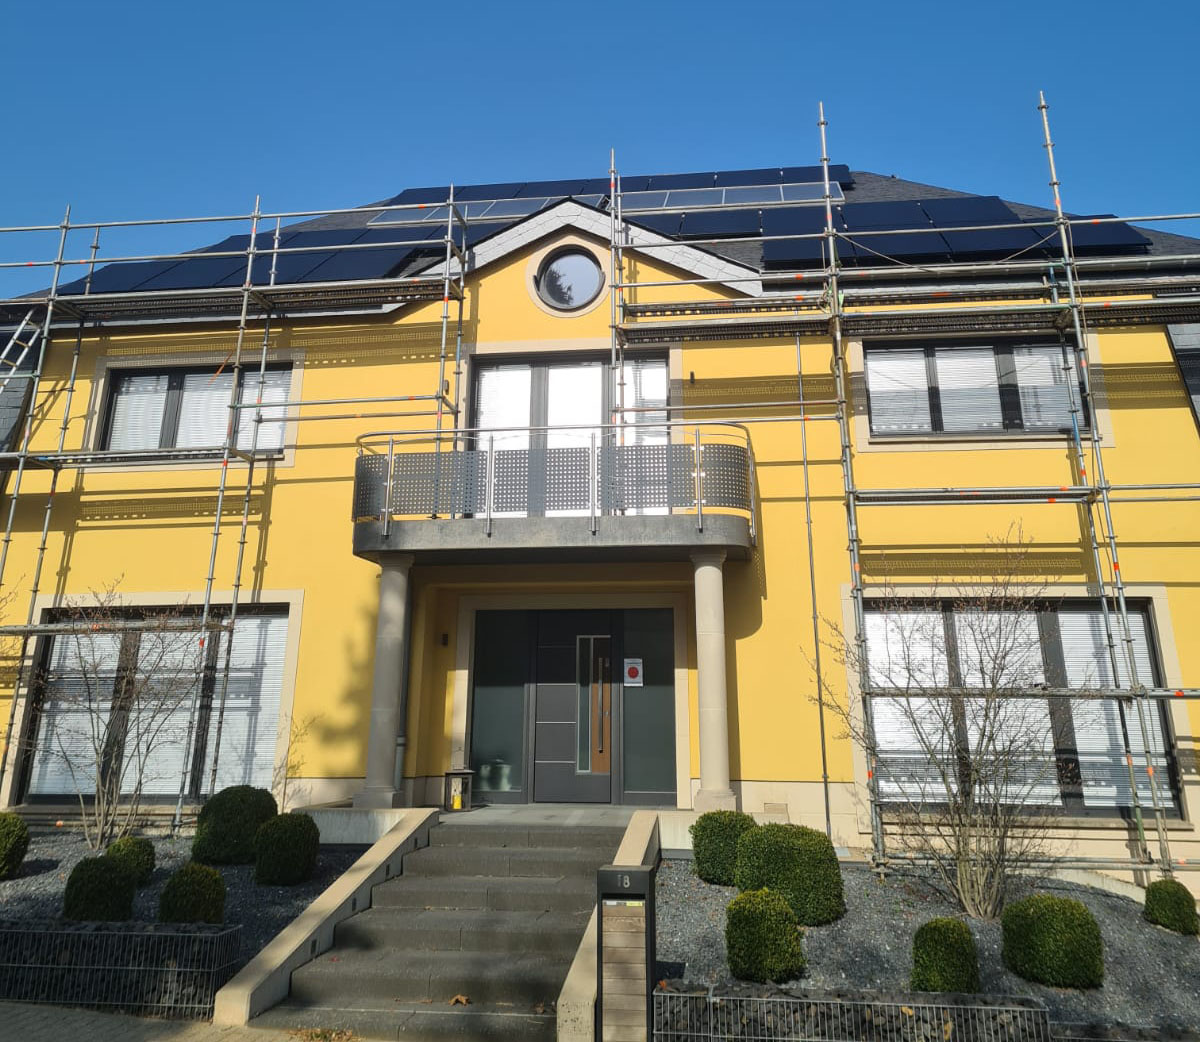 panneaux photovoltaiques sur toiture à Hesperange